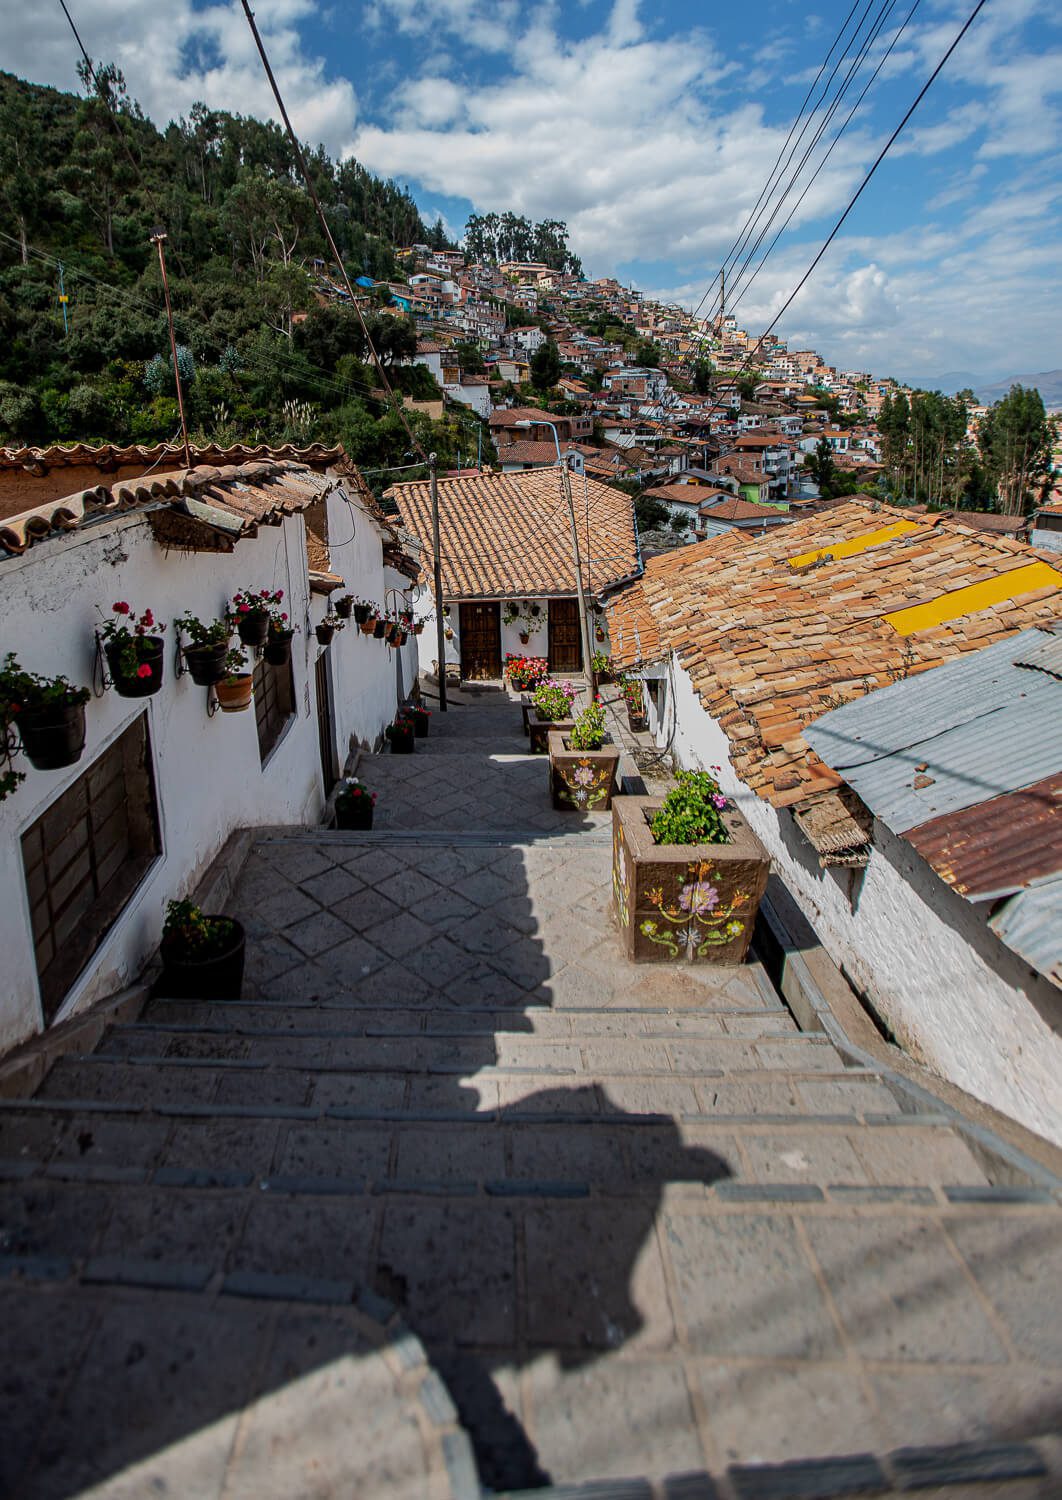 The San Blas in Cusco, Peru